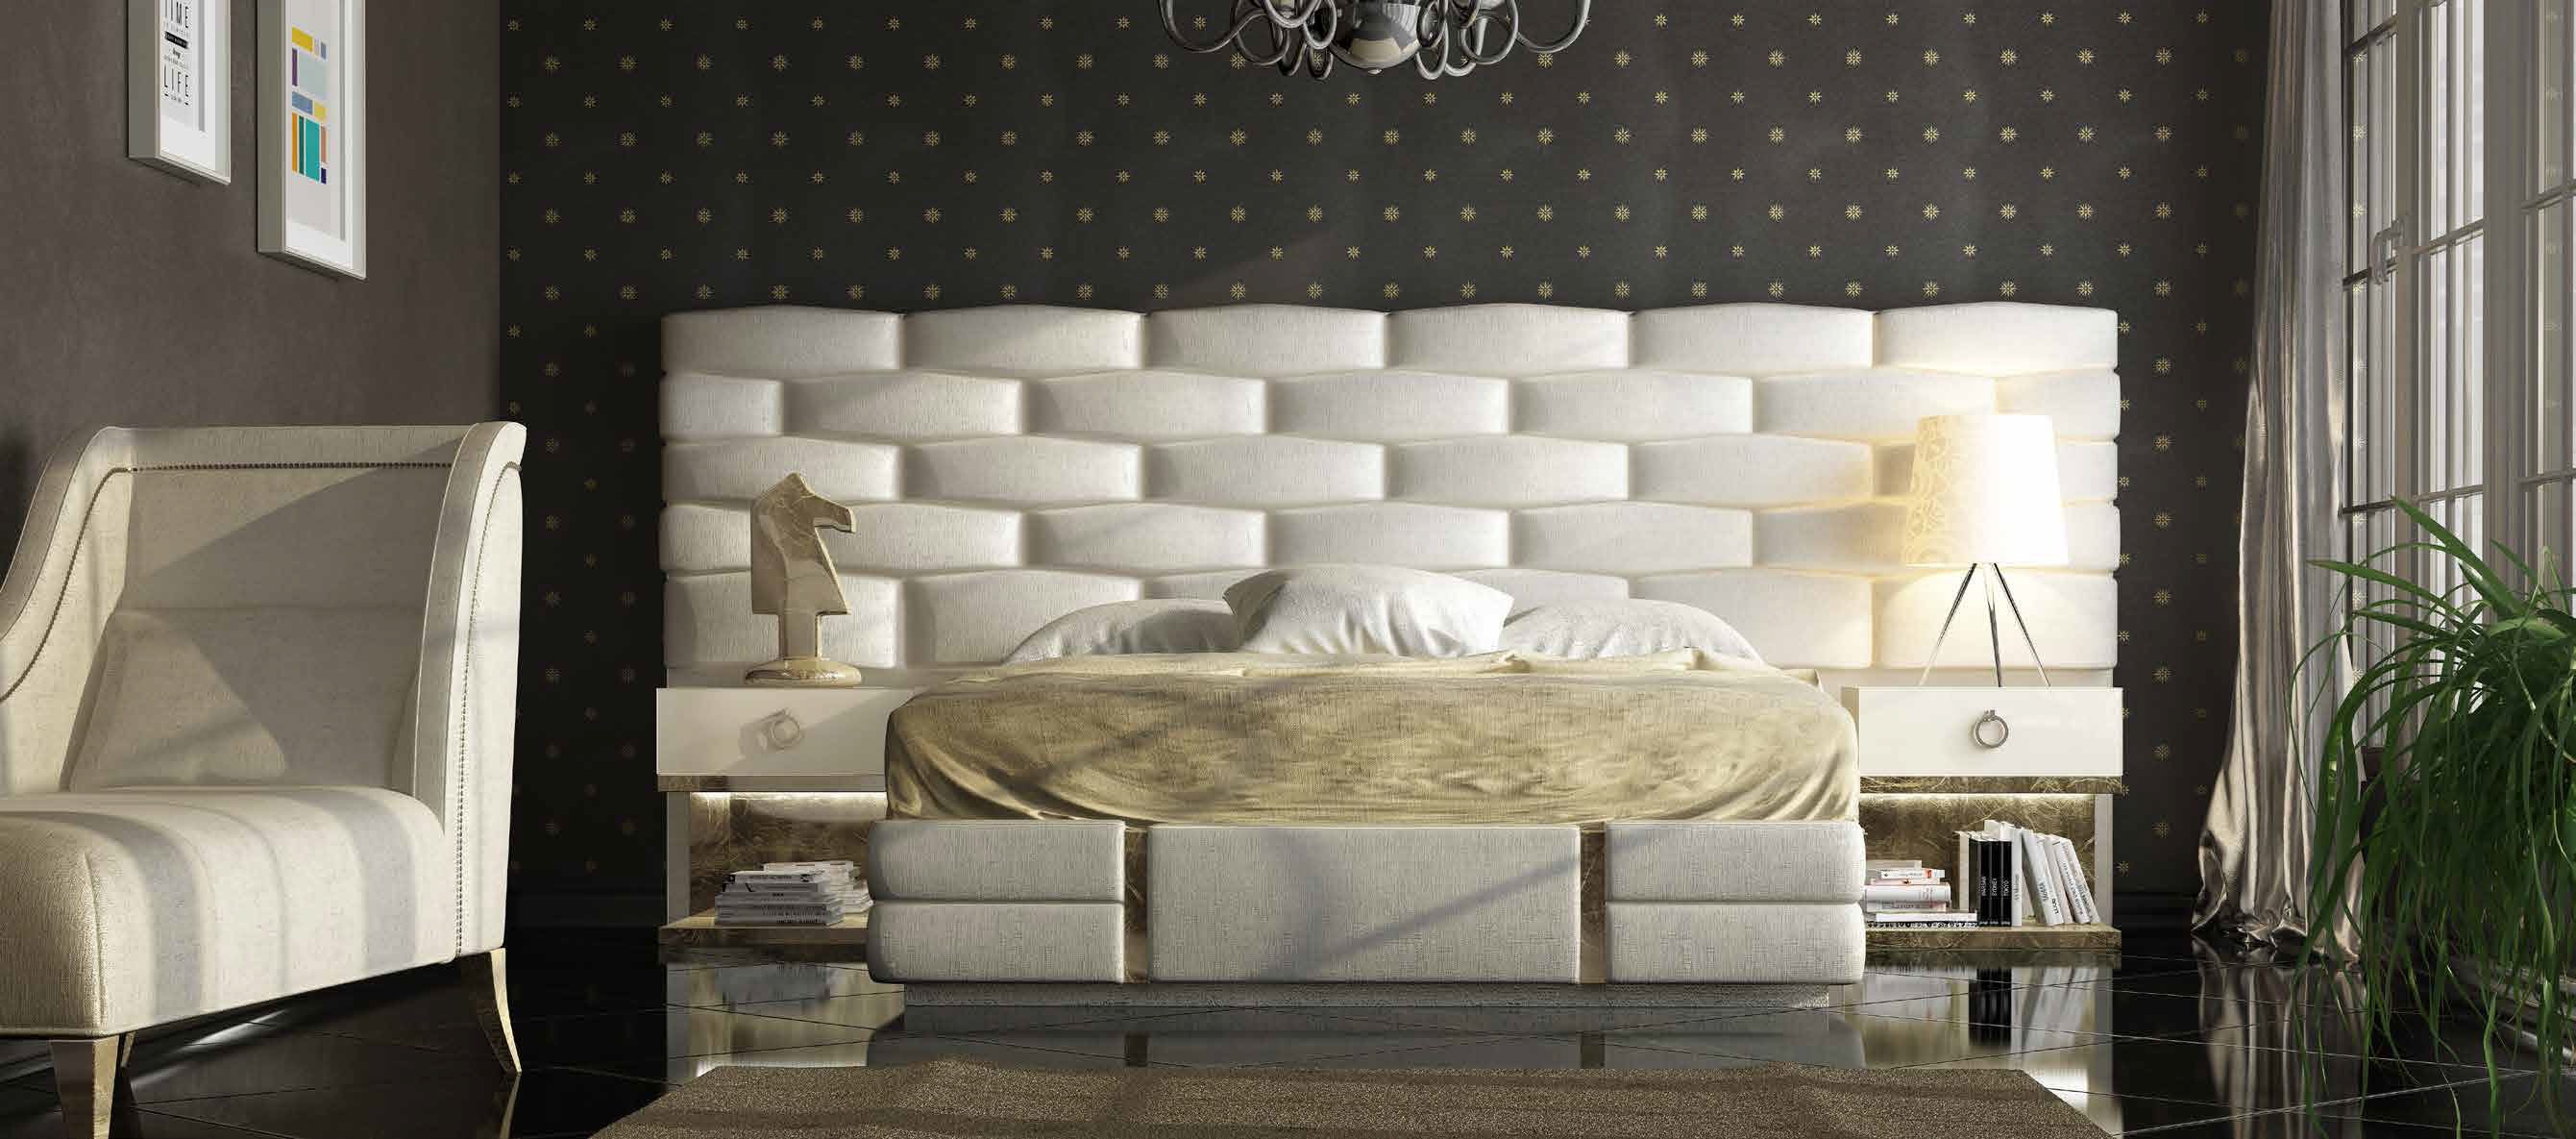 Brands MCS Classic Bedrooms, Italy DOR 37